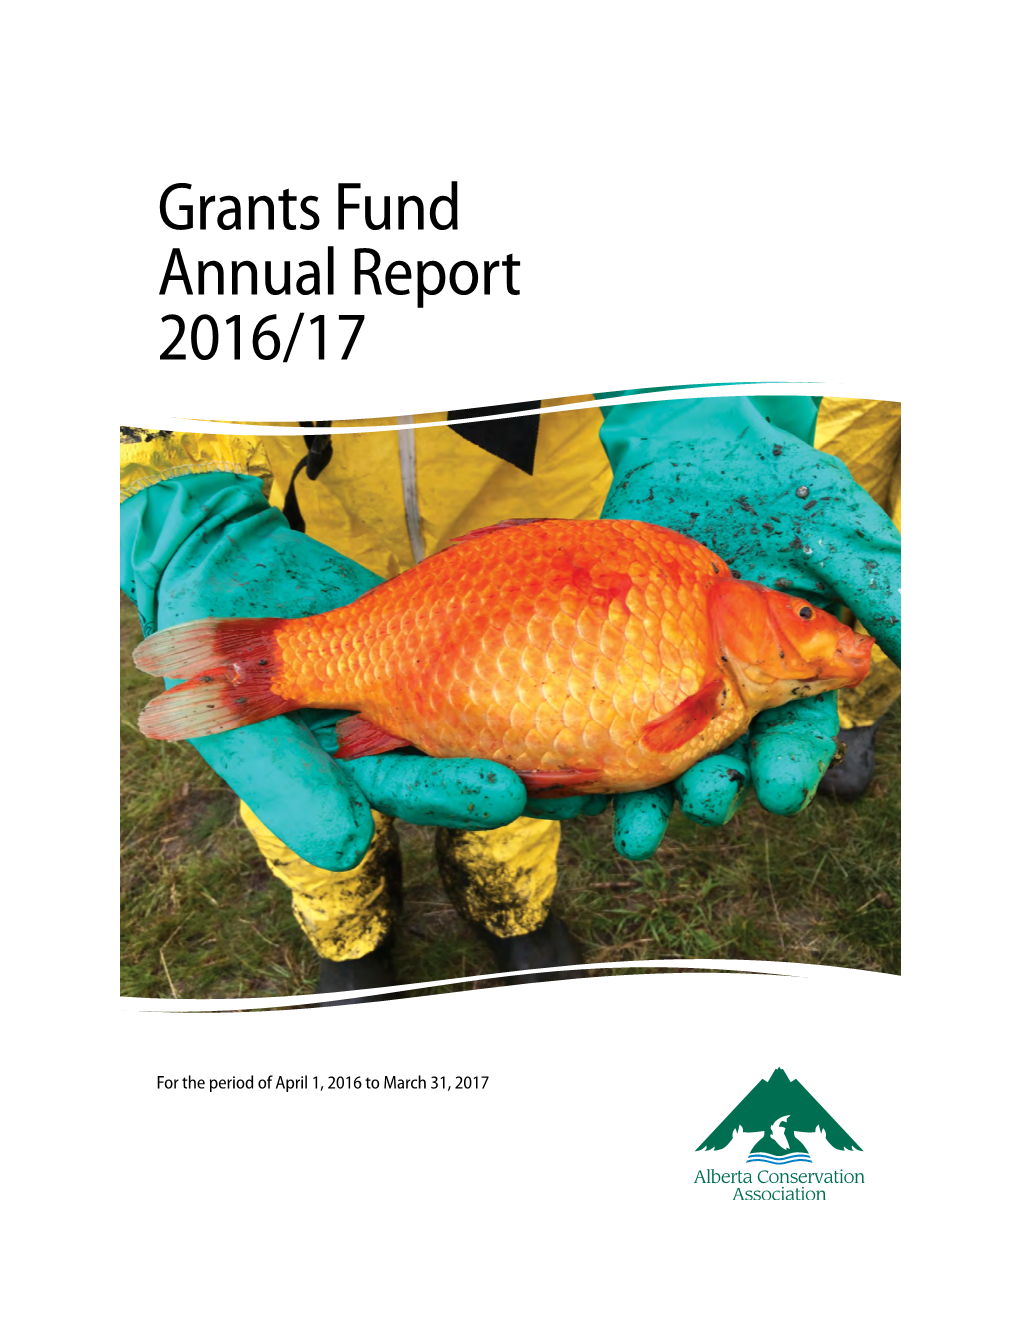 Grants Fund Annual Report 2016/17